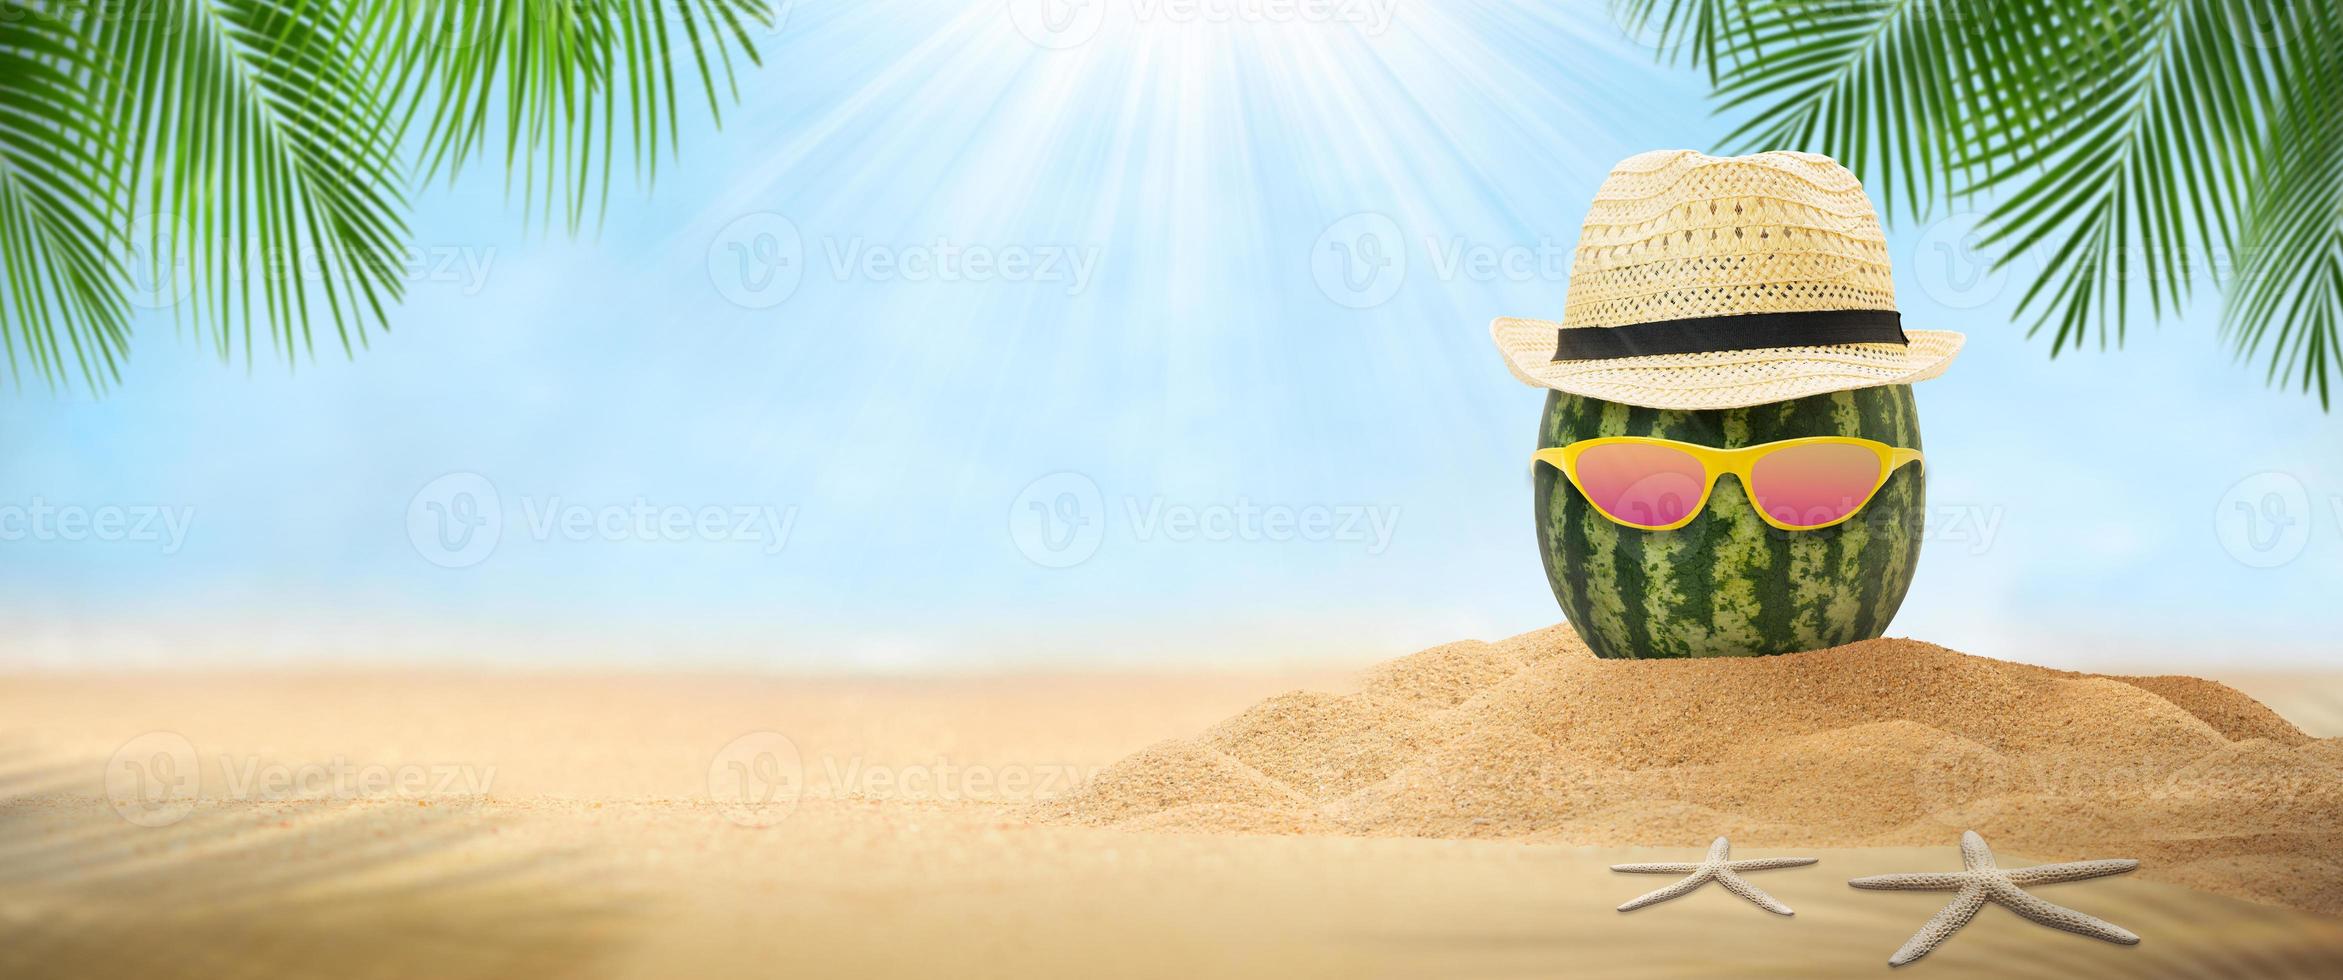 vattenmelon bär hatt sommar foto